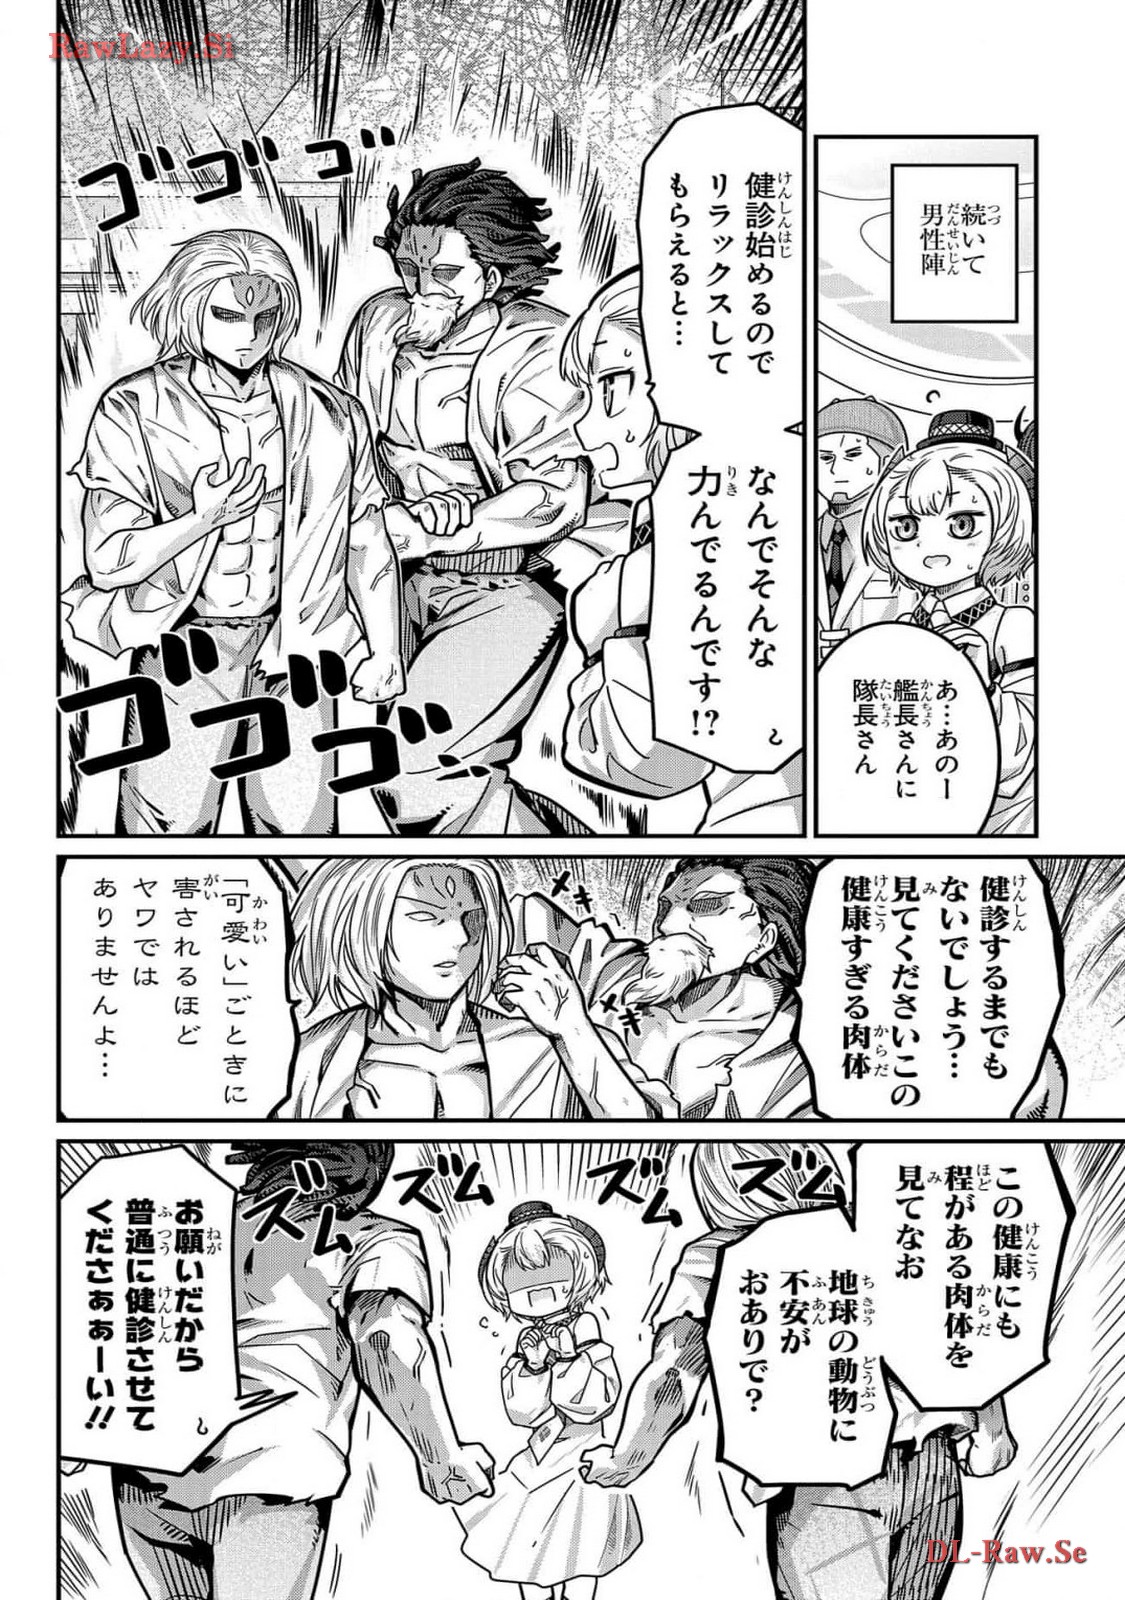 Kawaisugi Crisis - Chapter 107 - Page 6